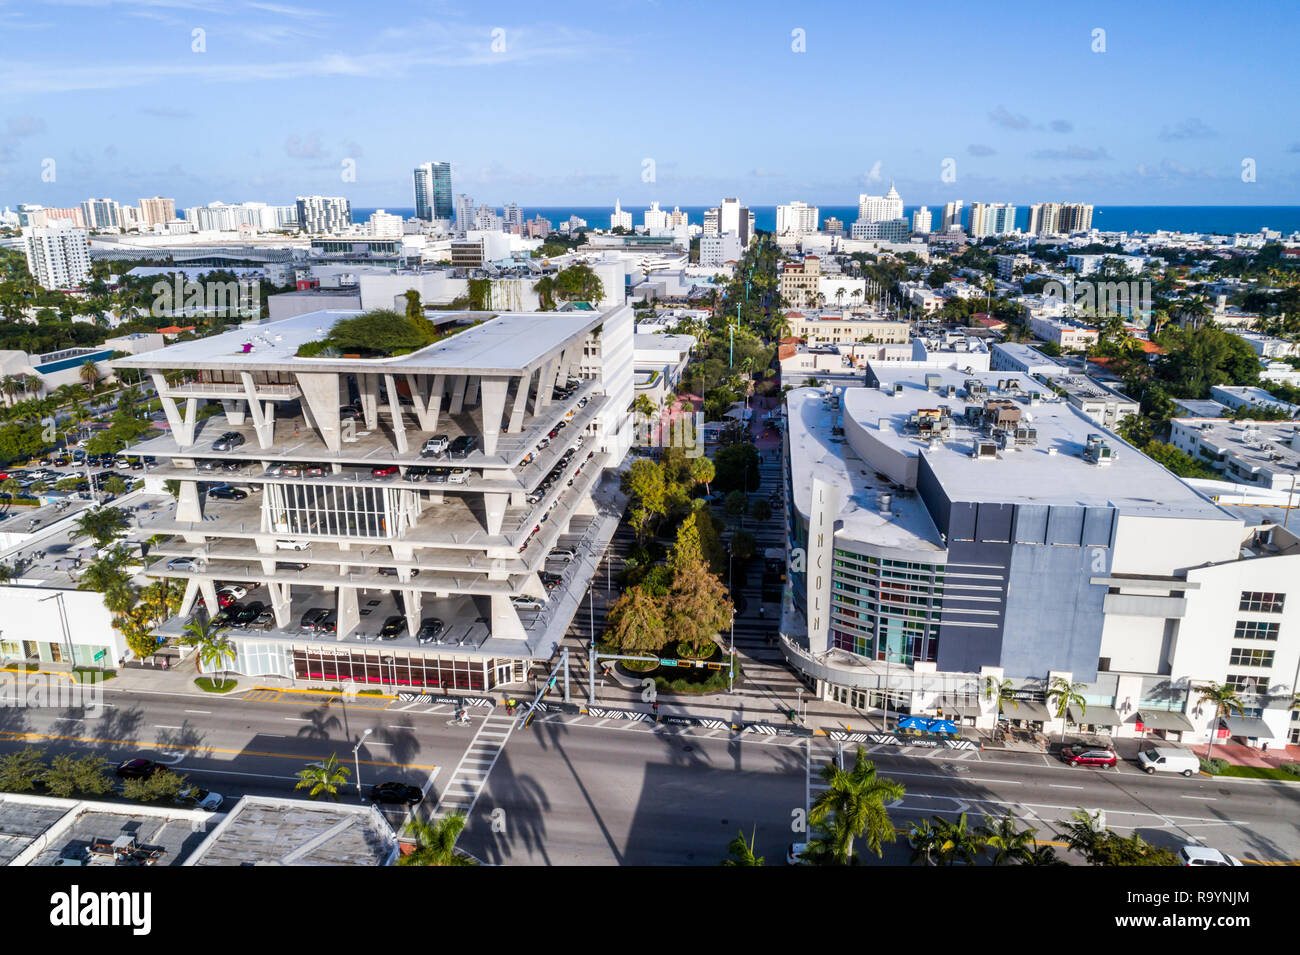 Miami Beach Florida, Alton Road, Lincoln Road, LAZ parking garage 1111, Regal Cinemas South Beach IMAX, vue aérienne depuis le dessus Banque D'Images